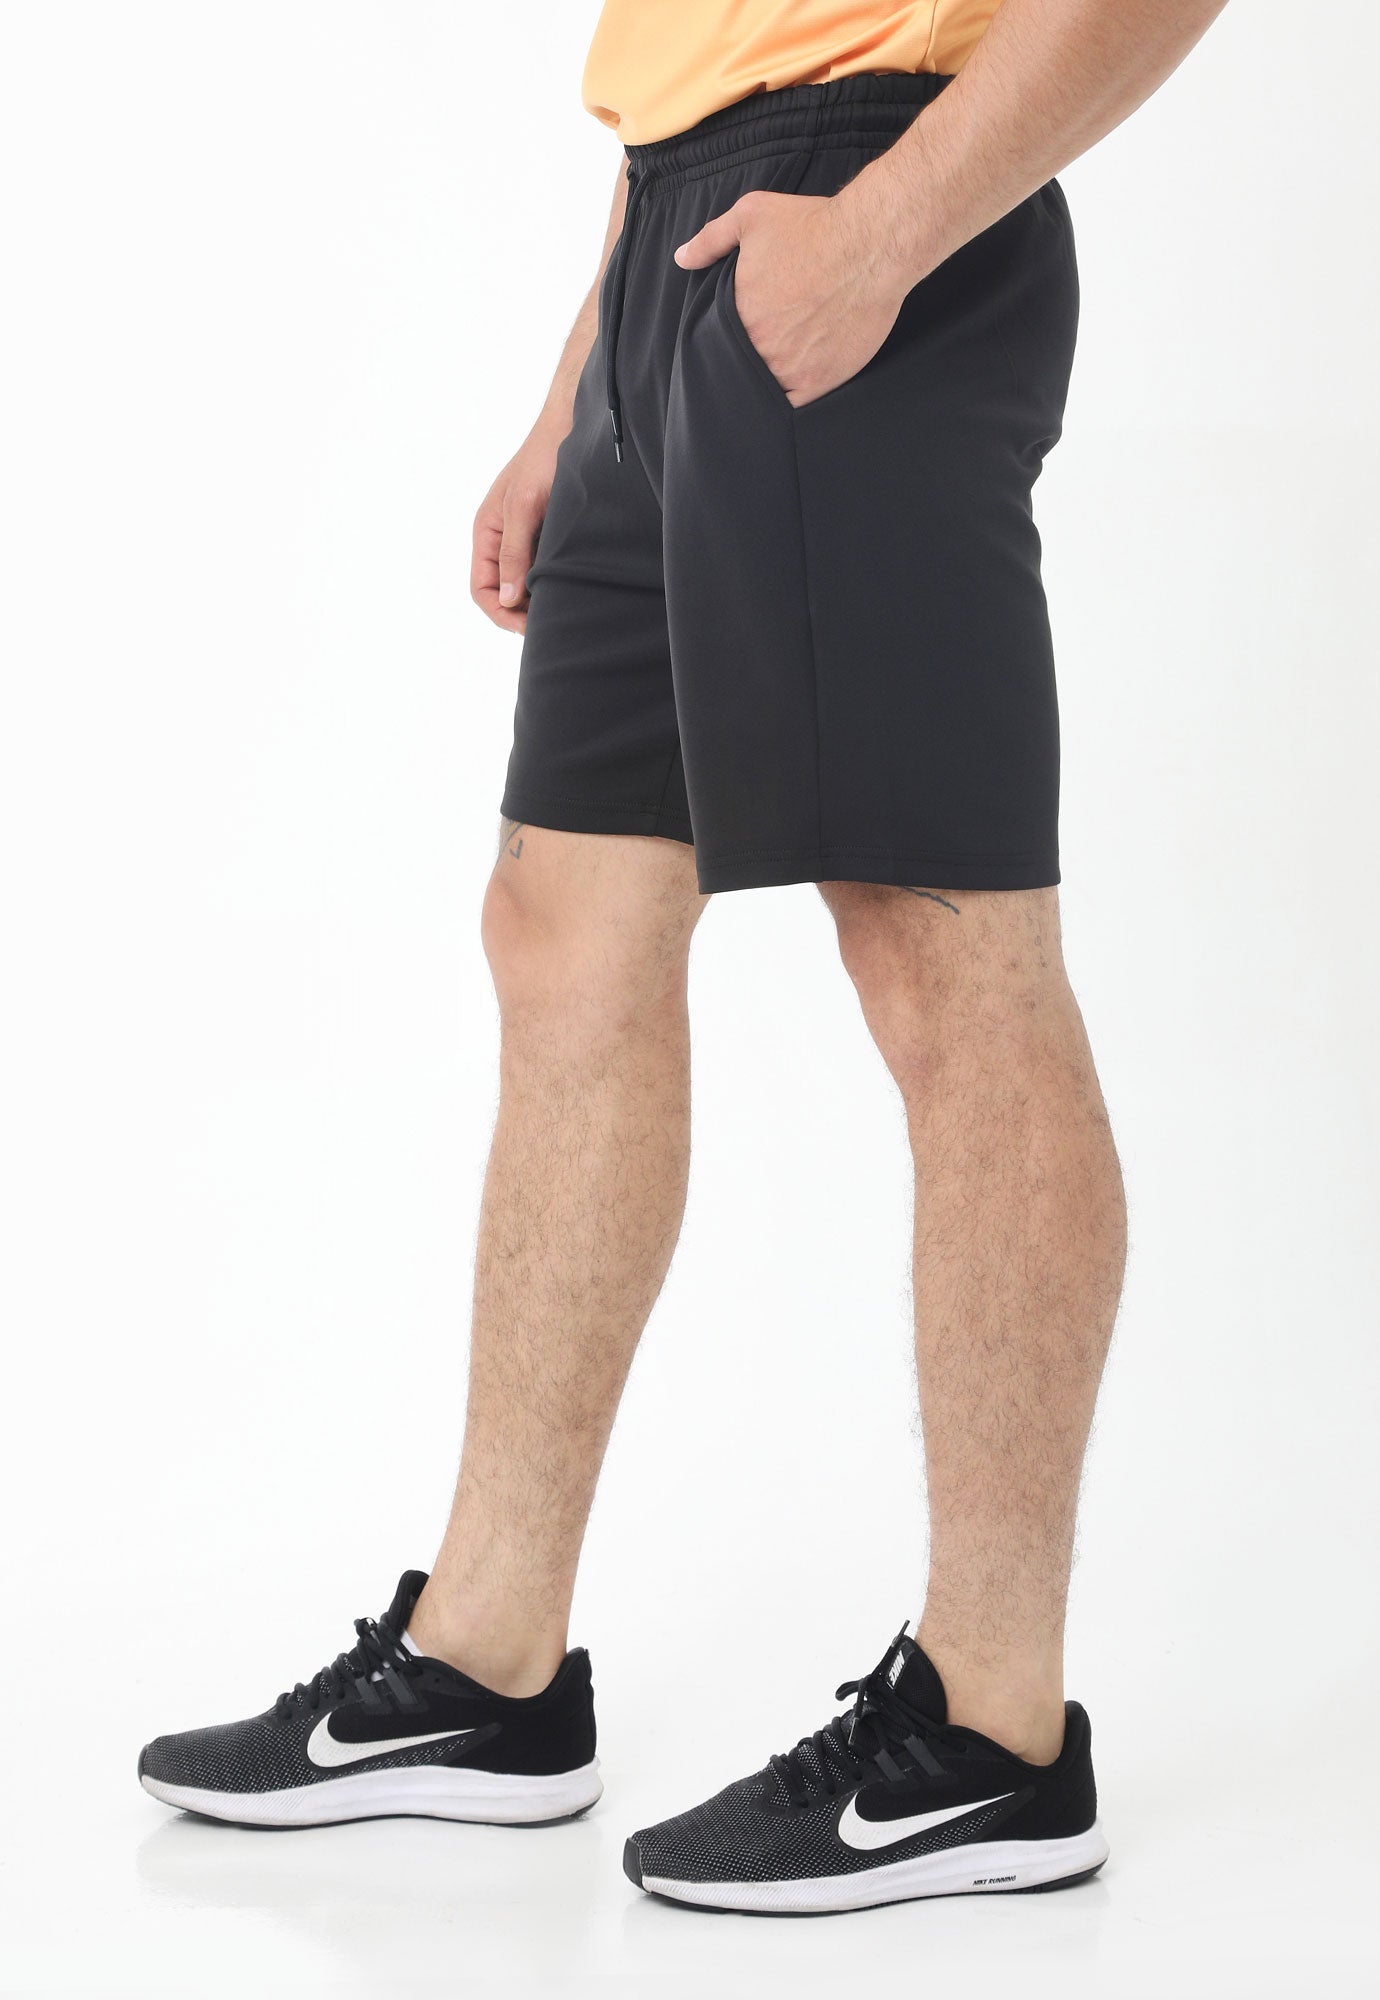 Pantaloneta deportiva negra  fondo entero, cintura con elástico y cordón ajustable para hombre